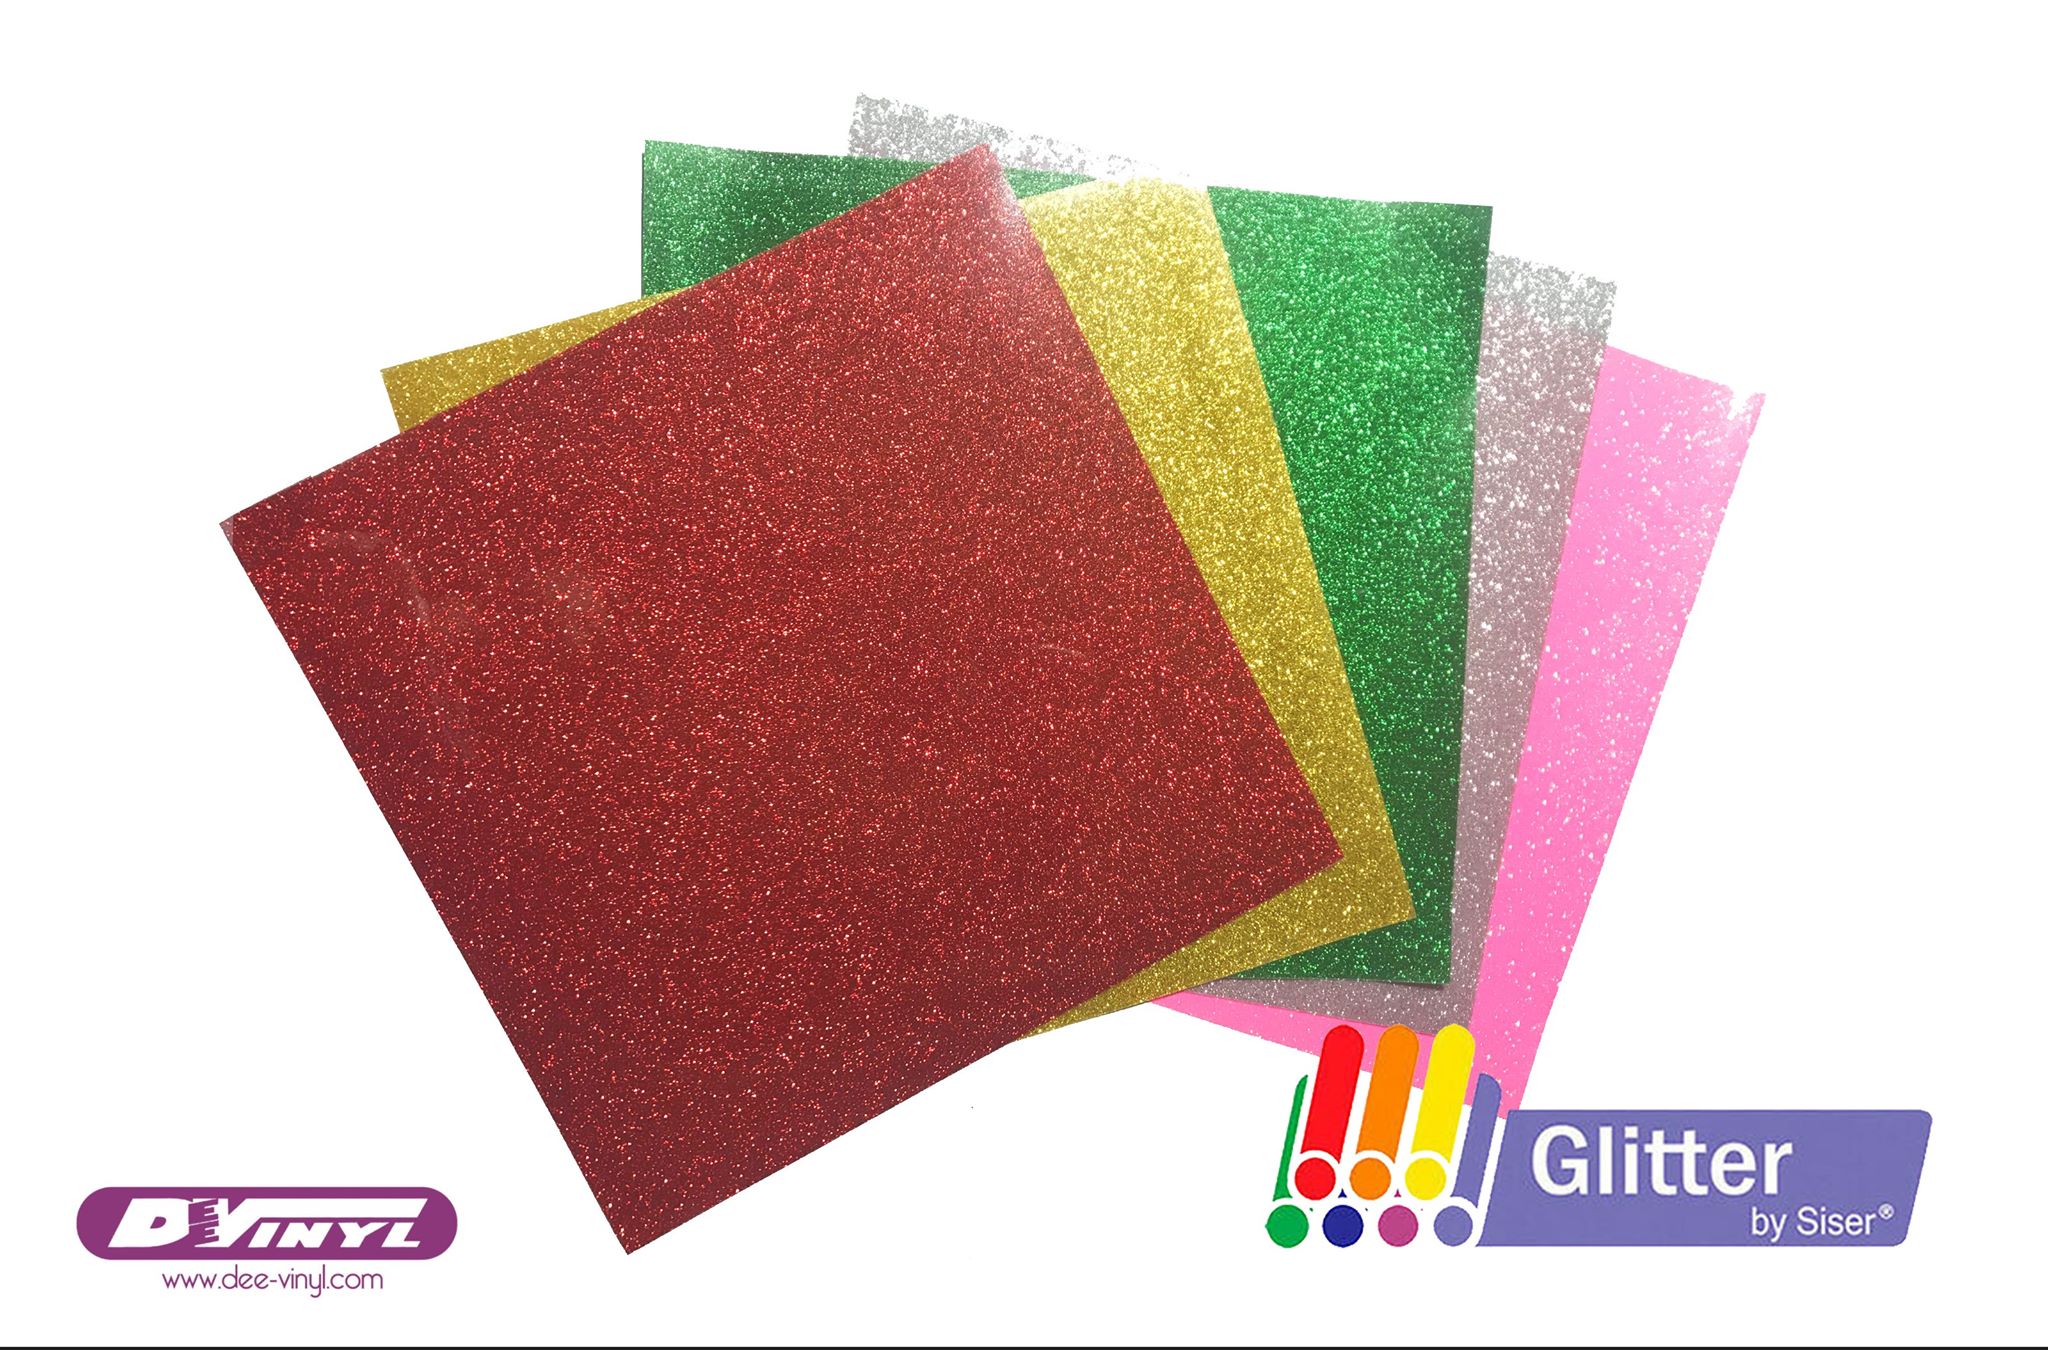 Siser Glitter Heat Transfer Vinyl - Red HTV